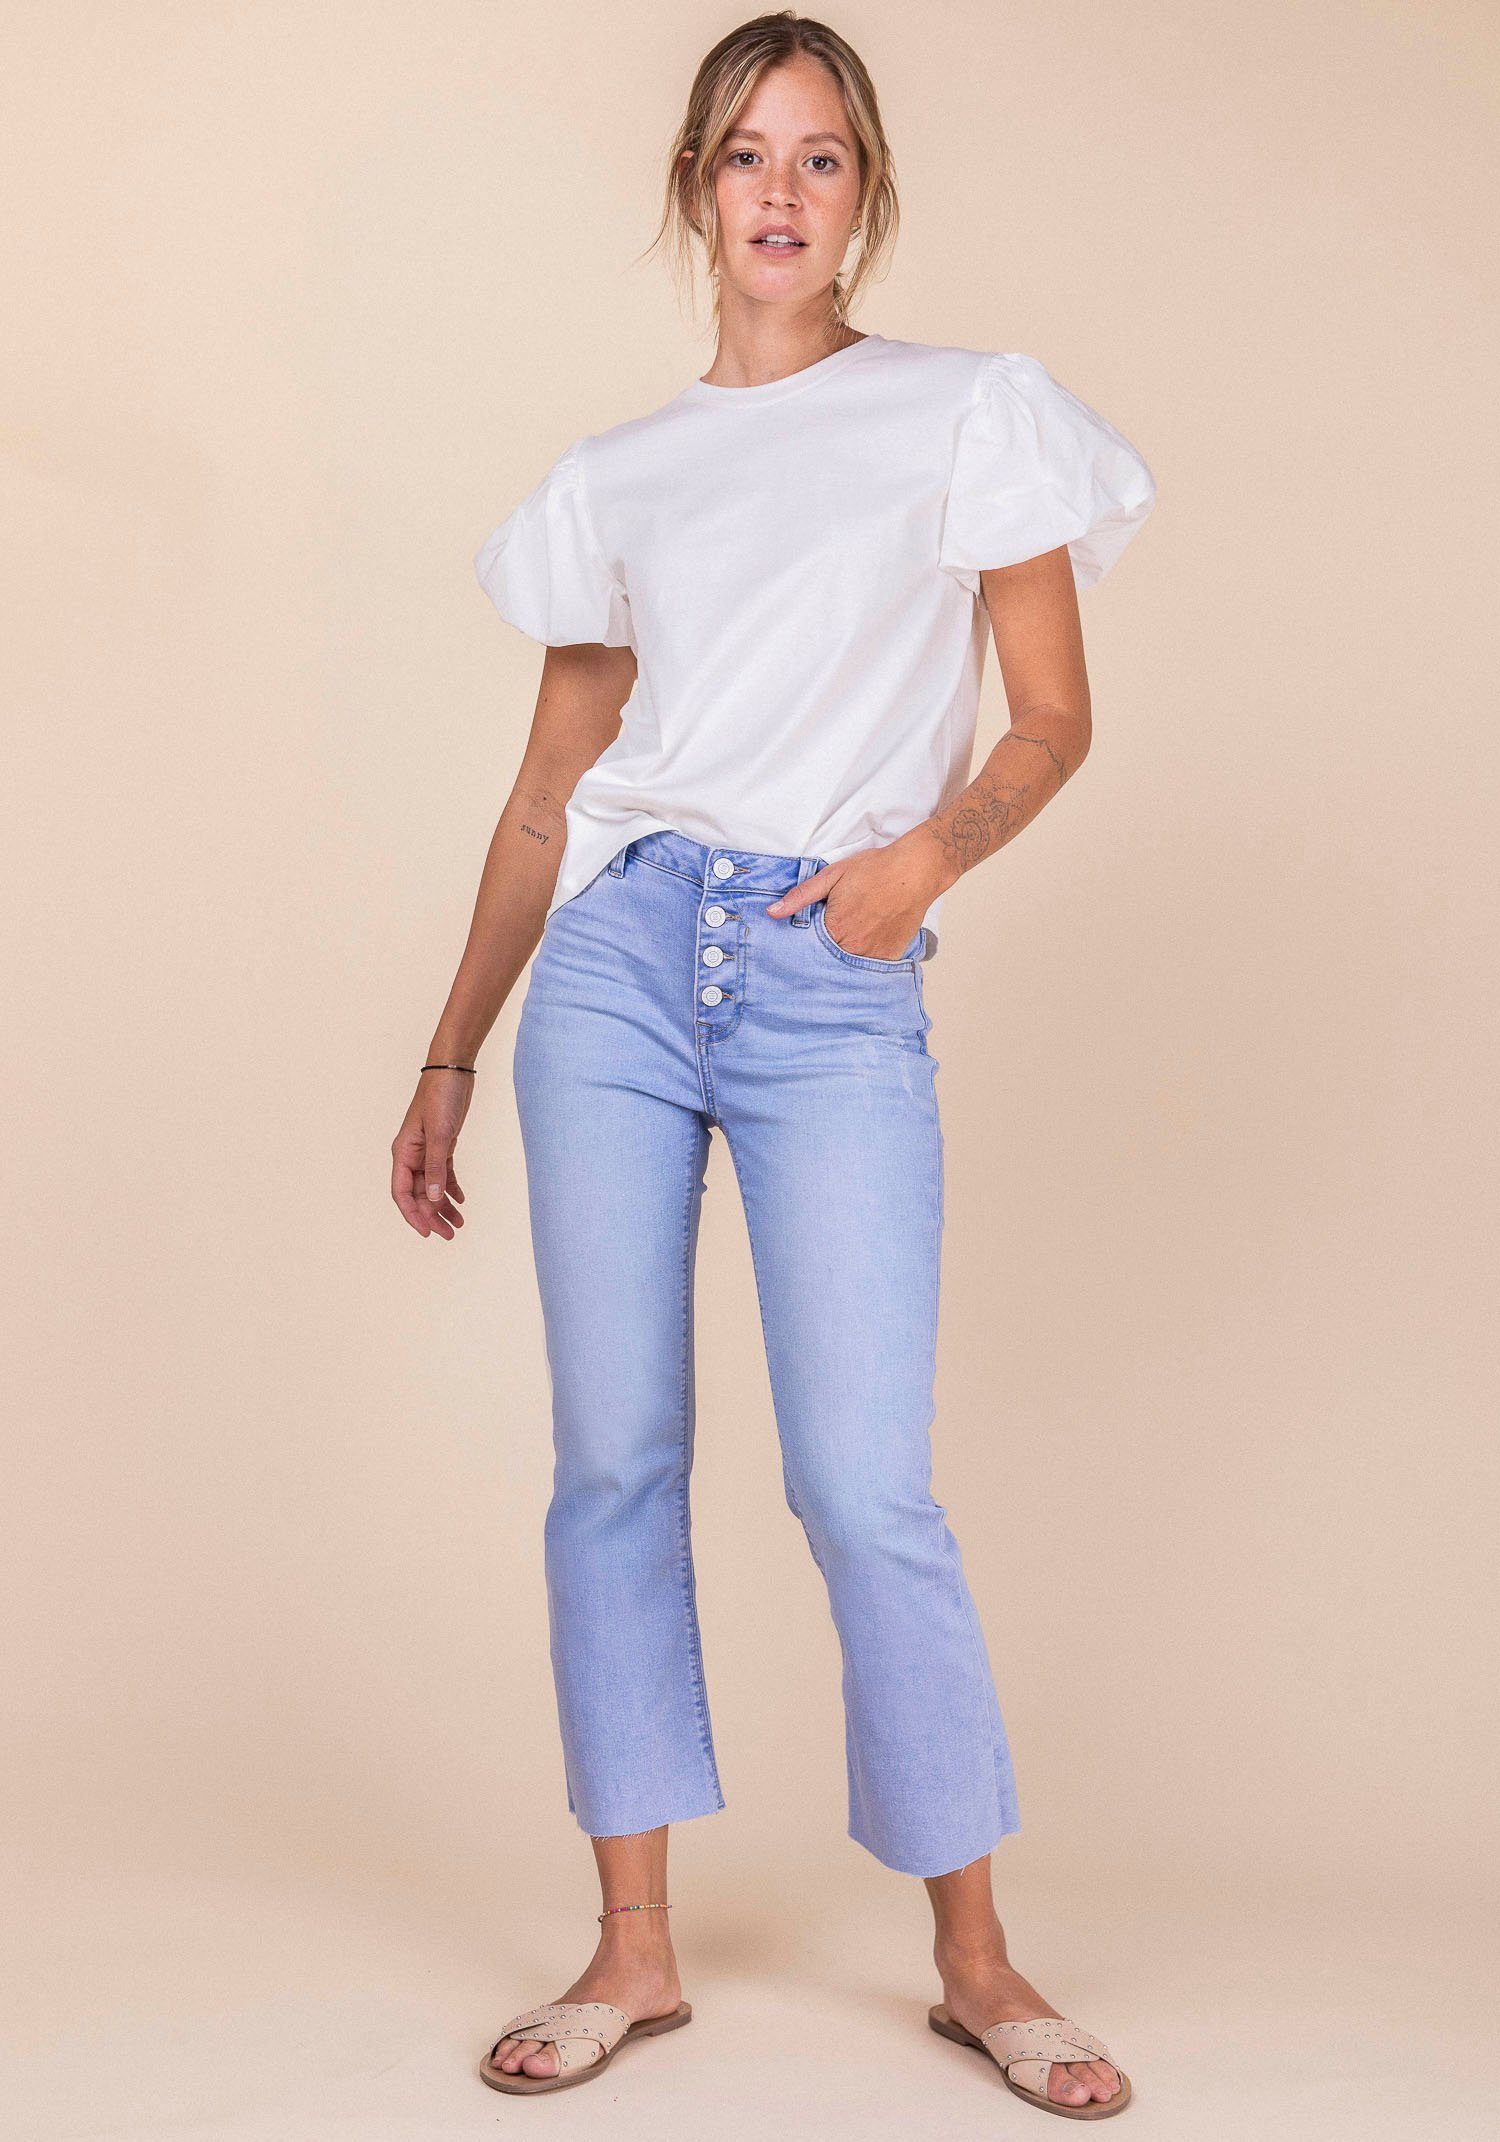 Damen Jeans BLUE FIRE Ankle-Jeans EMMA mit leicht ausgefranster Kante am Beinabschluss